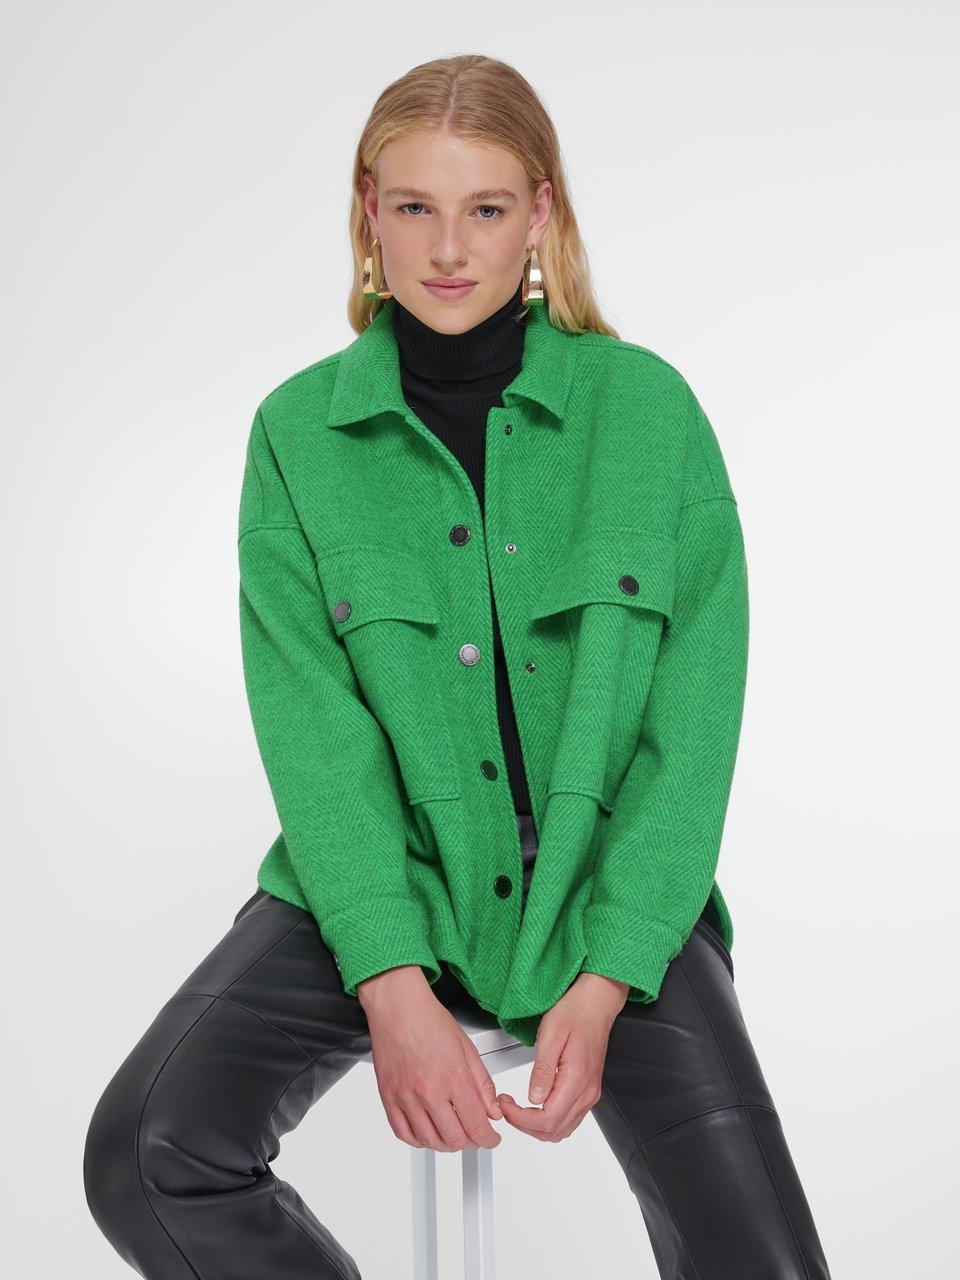 Damer jakker & frakker online hos Hahn